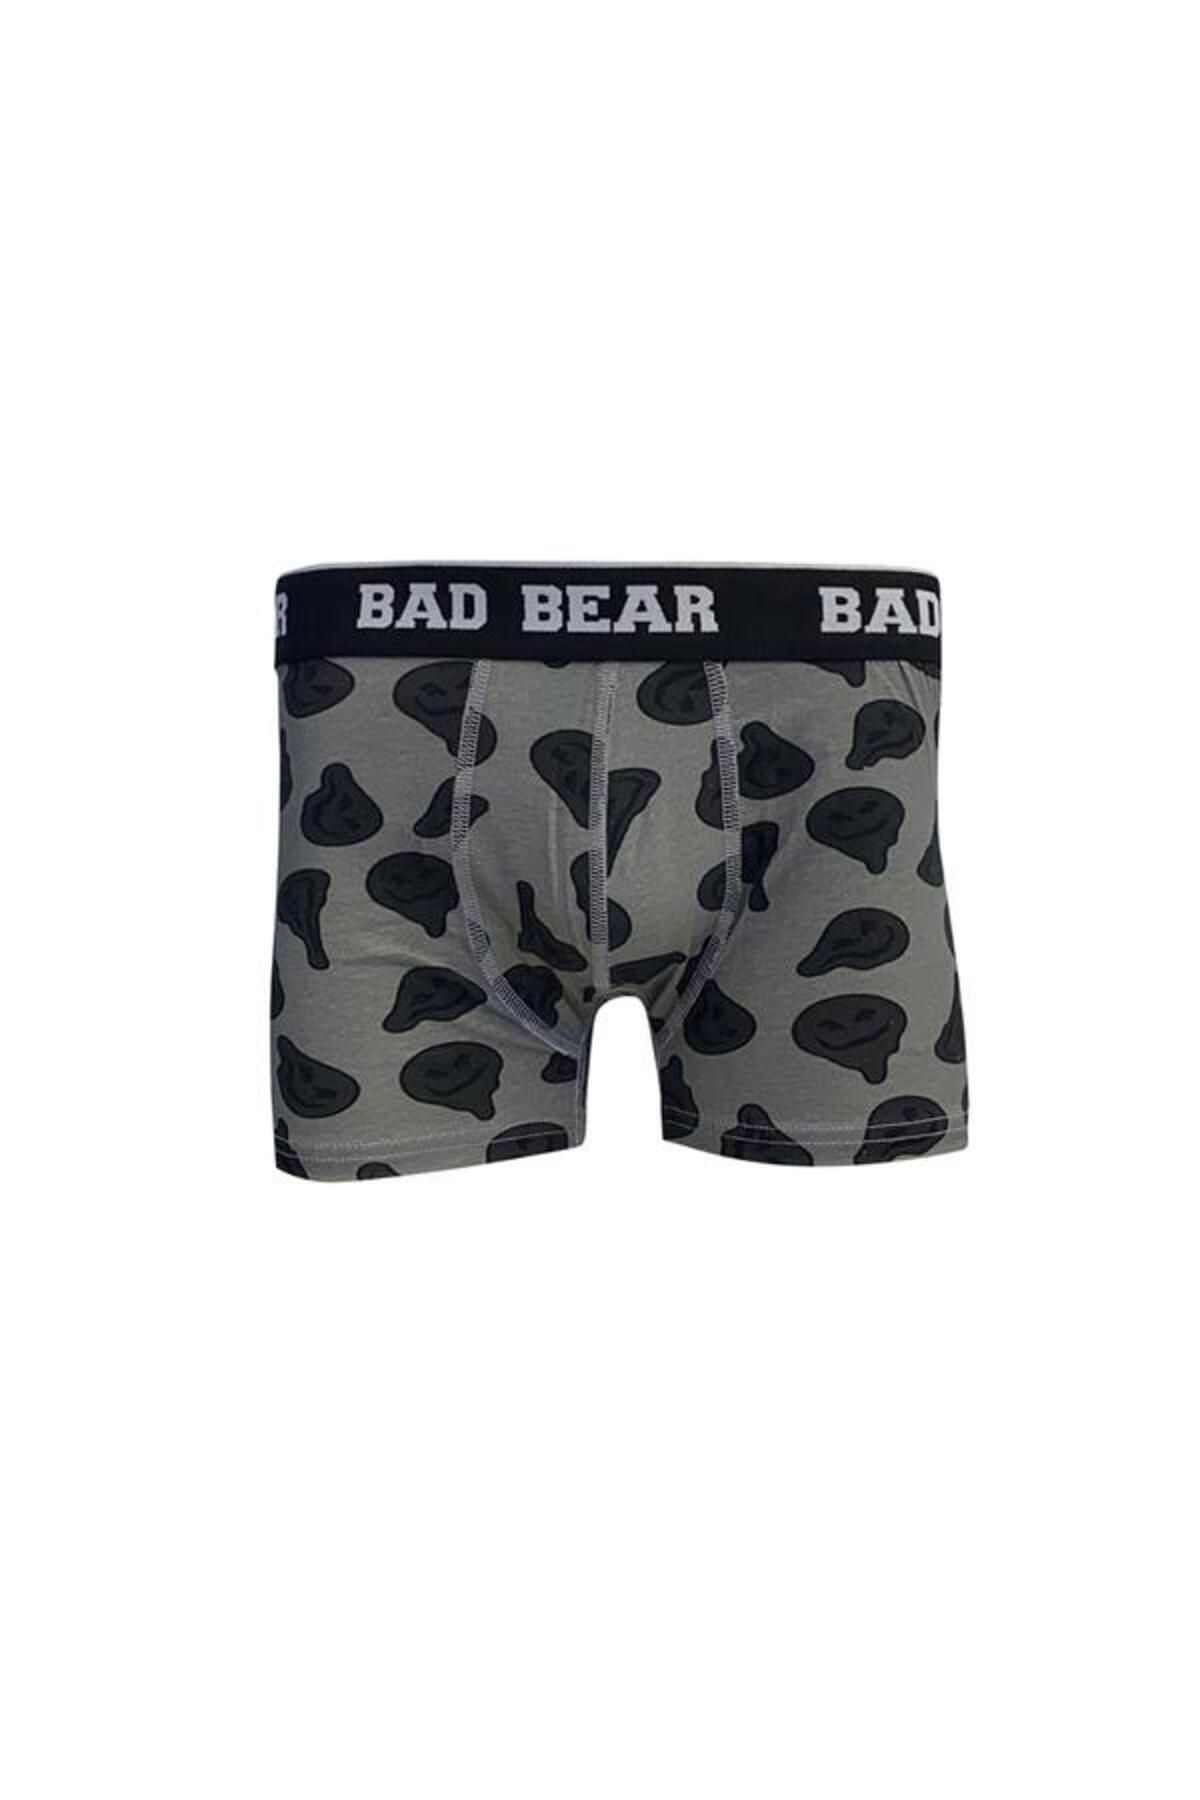 Bad Bear 21.01.03.007-c79 Melt Erkek Boxer